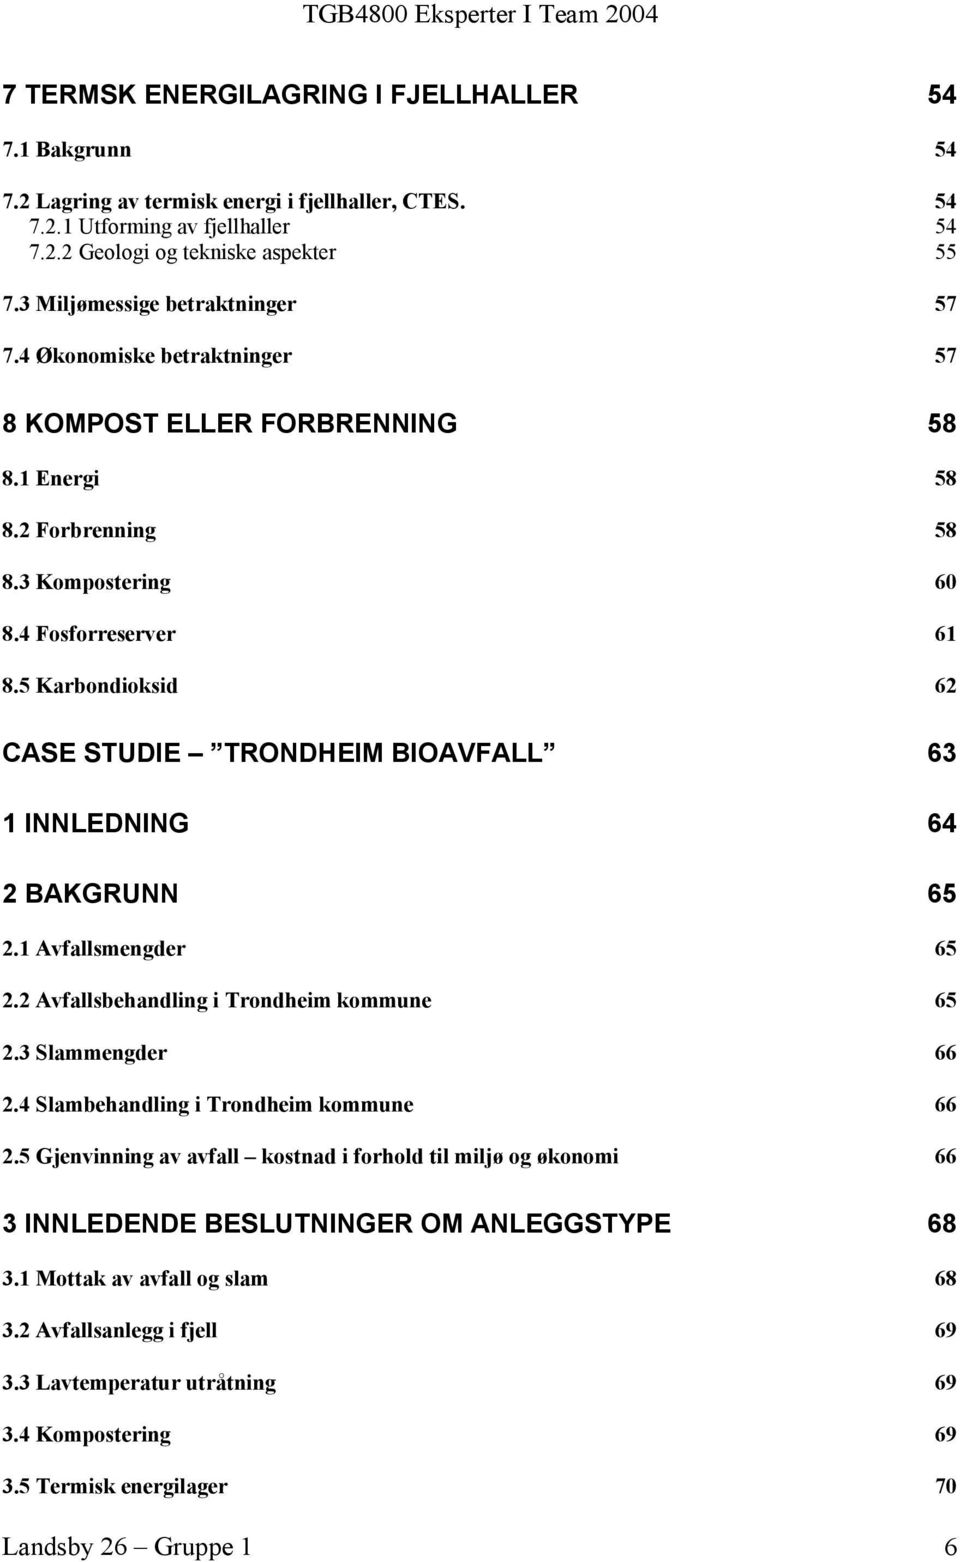 5 Karbondioksid 62 CASE STUDIE TRONDHEIM BIOAVFALL 63 1 INNLEDNING 64 2 BAKGRUNN 65 2.1 Avfallsmengder 65 2.2 Avfallsbehandling i Trondheim kommune 65 2.3 Slammengder 66 2.